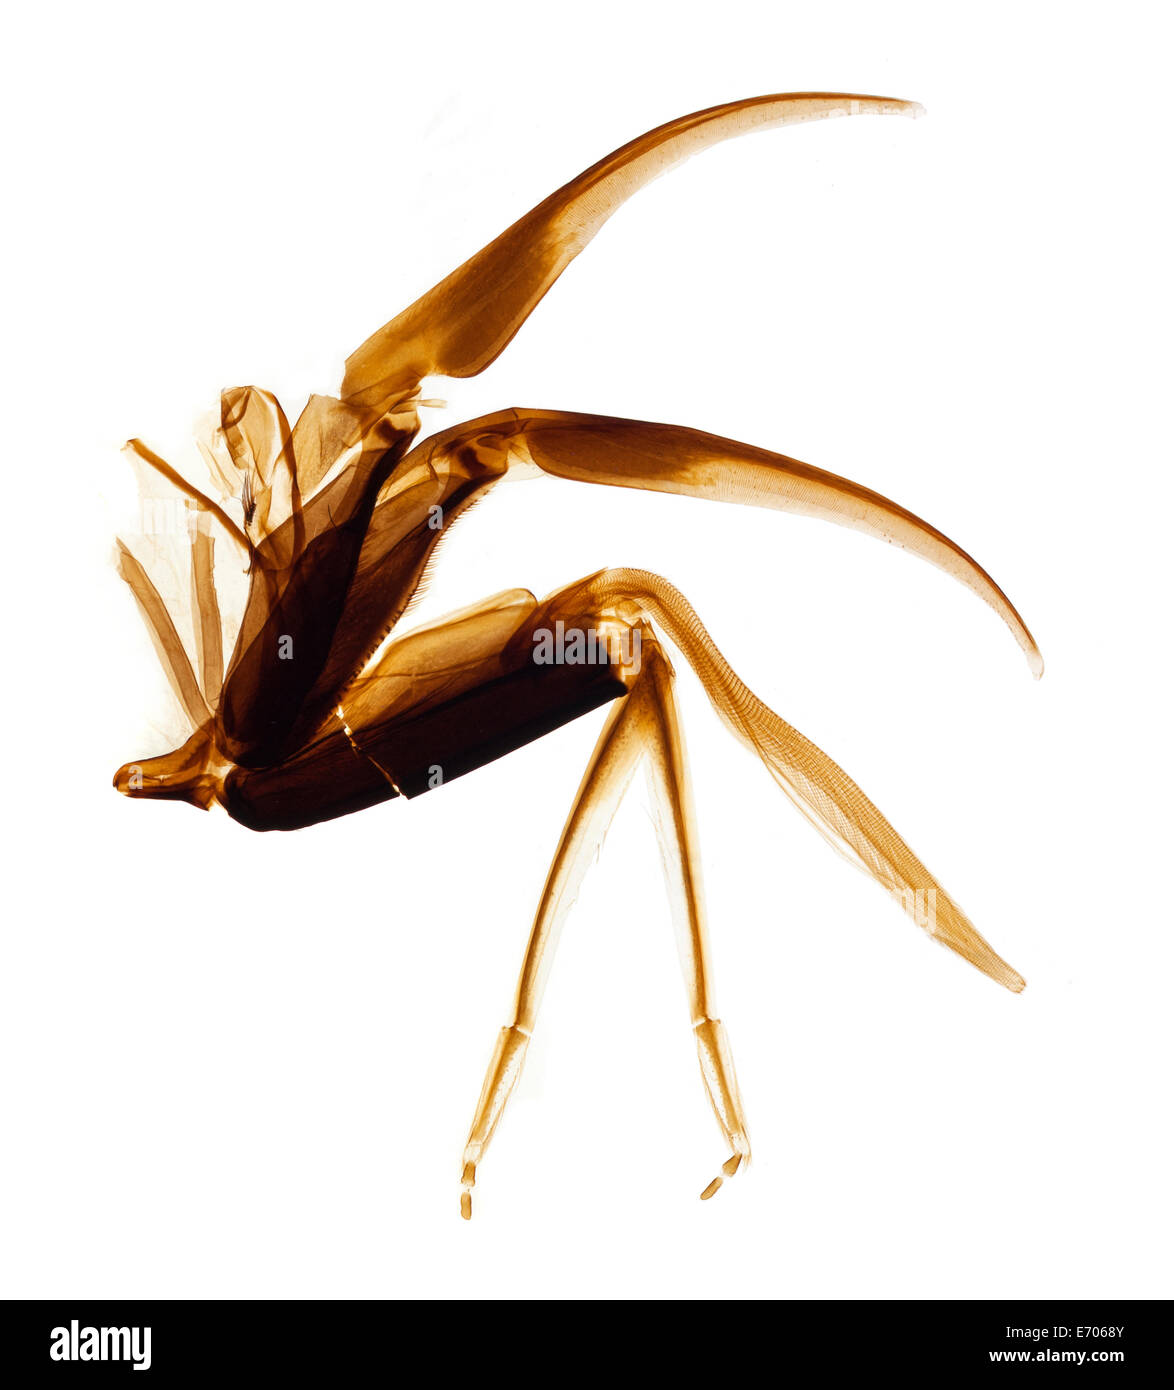 Microfotografía Brightfield, alimentación de néctar proboscis de abeja, galea, glossa, palpos labiales estructuras Foto de stock